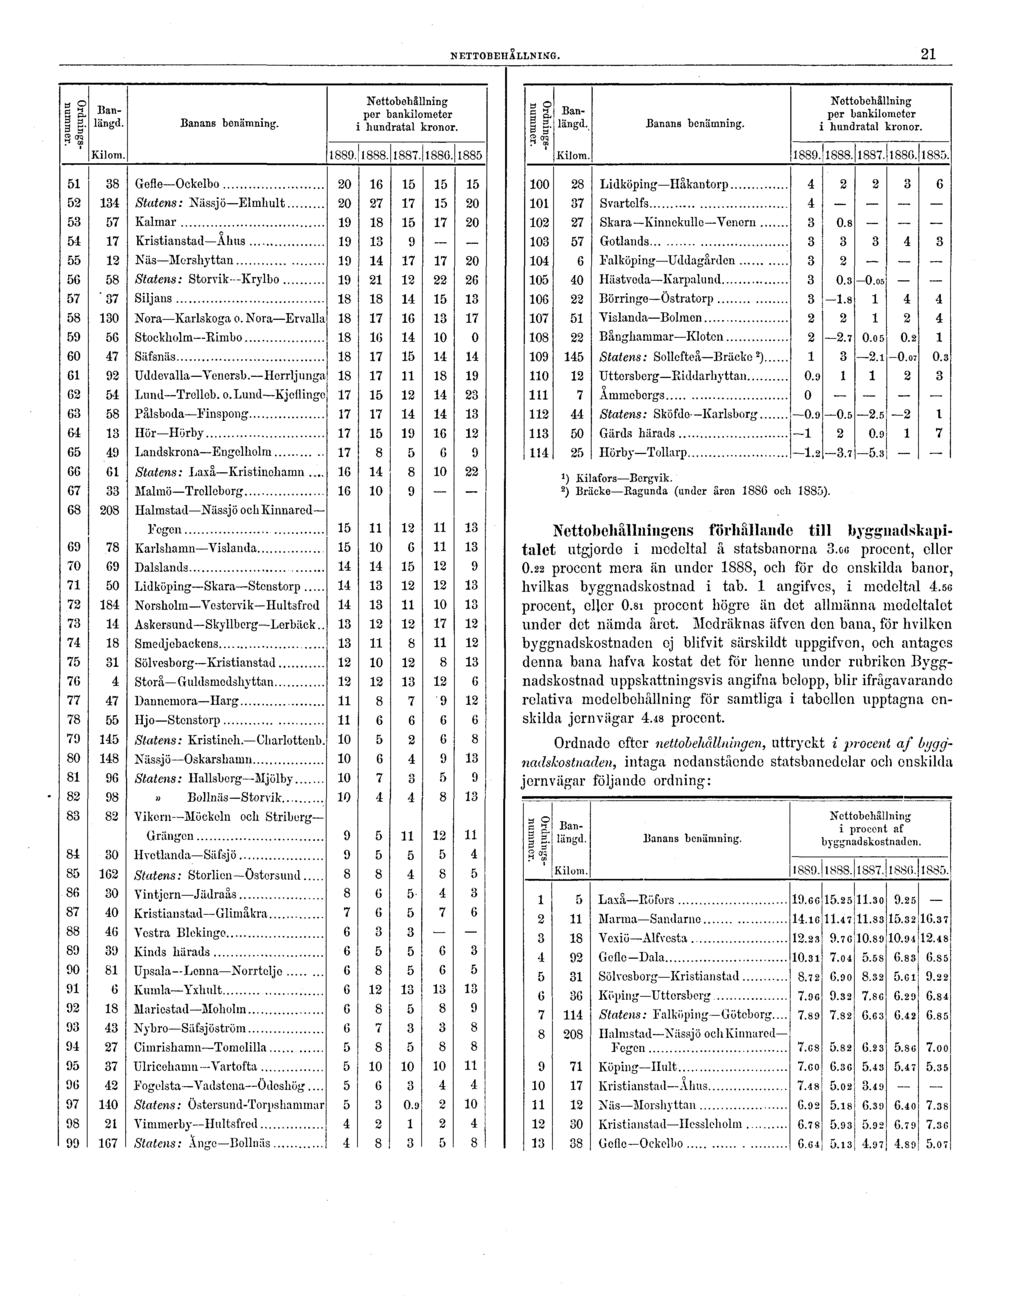 NETTOBEHÅLLNING. 21 ') Kilafors Bergvik. 2 ) Bräcke Ragunda (under åren 1880 och 1885). Nettobehållningens förhållande till bygguadskapitalet utgjorde i medeltal â statsbanorna 3.GG procent, eller O.